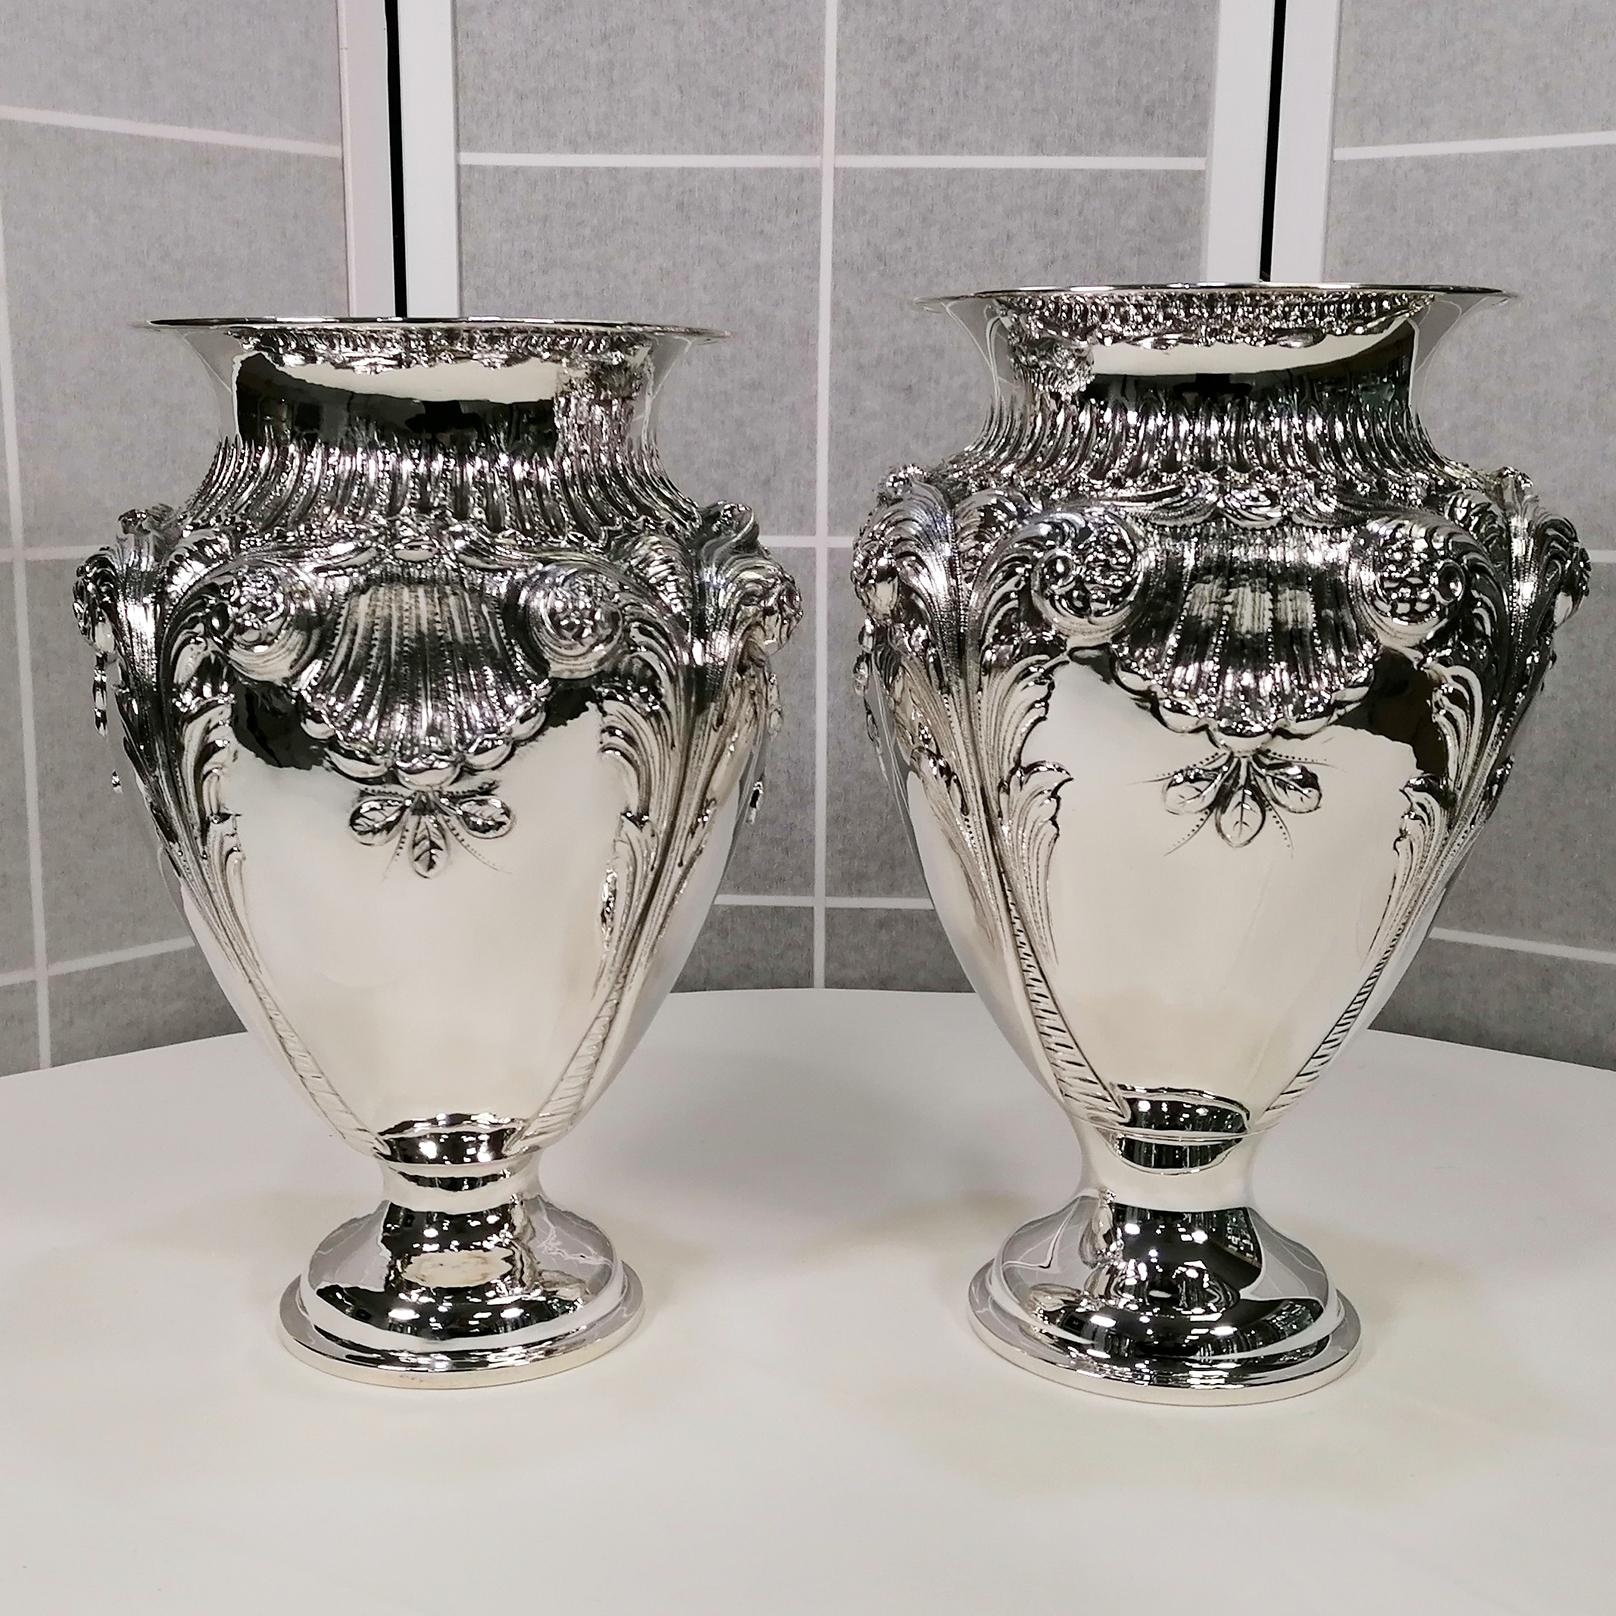 Grands vases en argent sterling de style baroque.
Cette paire de vases a été réalisée par le même maître orfèvre.
Fabriqués entièrement à la main, les vases sont similaires mais pas identiques, tant par leur taille que par leur exécution au ciseau